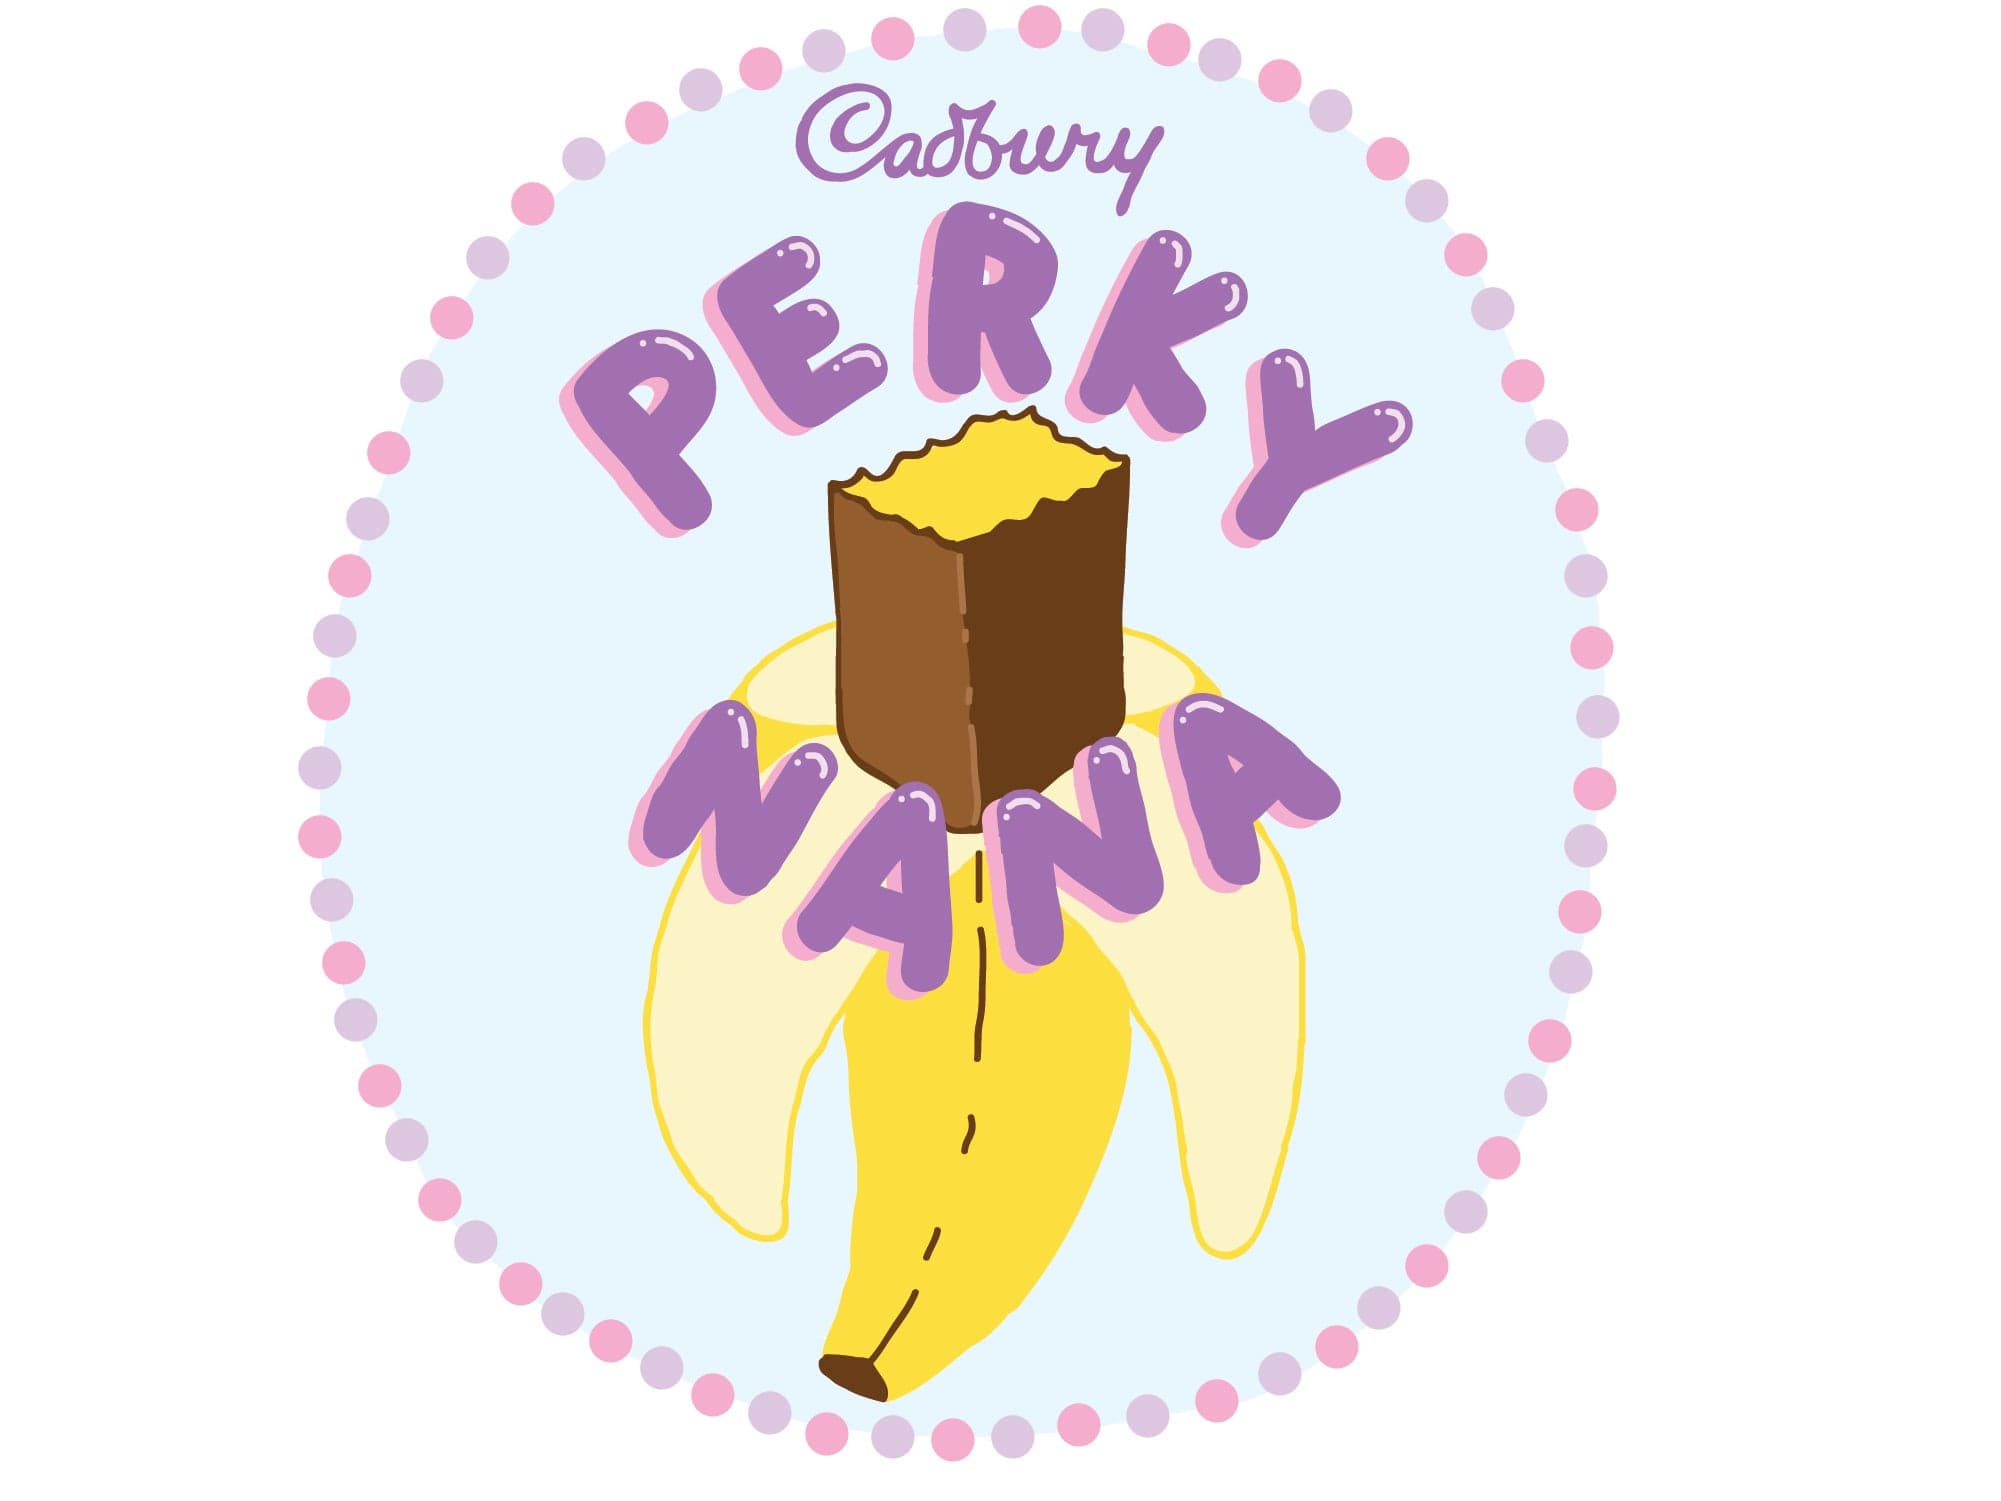 Cadbury Perky Nana